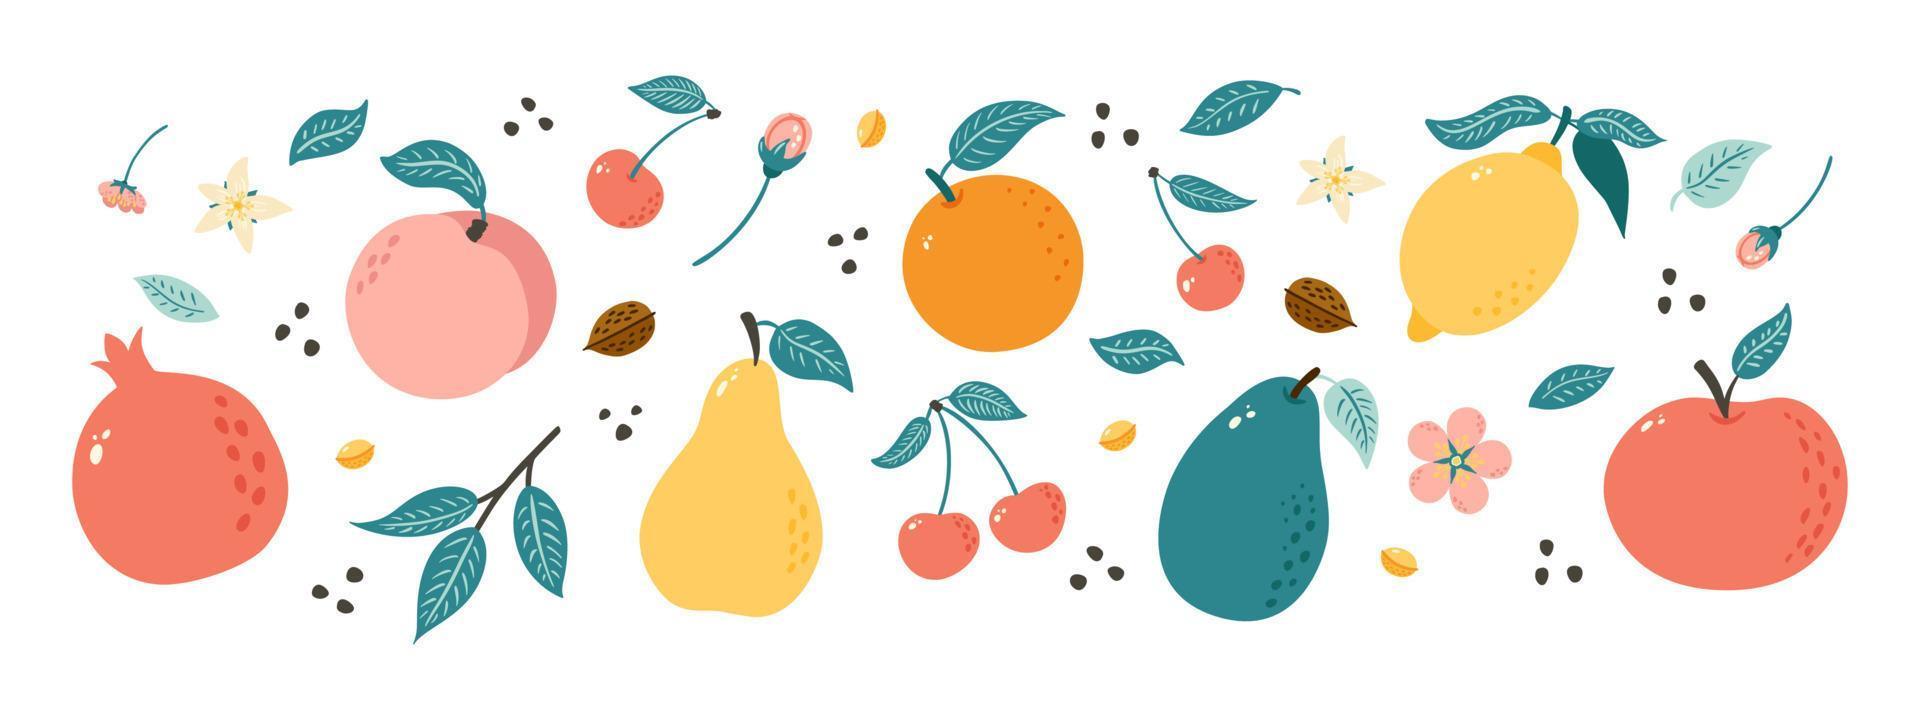 handritade frukter. samling av fruktillustrationer i doodlestil för affisch, banderoll, bakgrund, marknadsetikett, logotyp, klistermärke, vykort, meny, design och dekoration av matpaket vektor